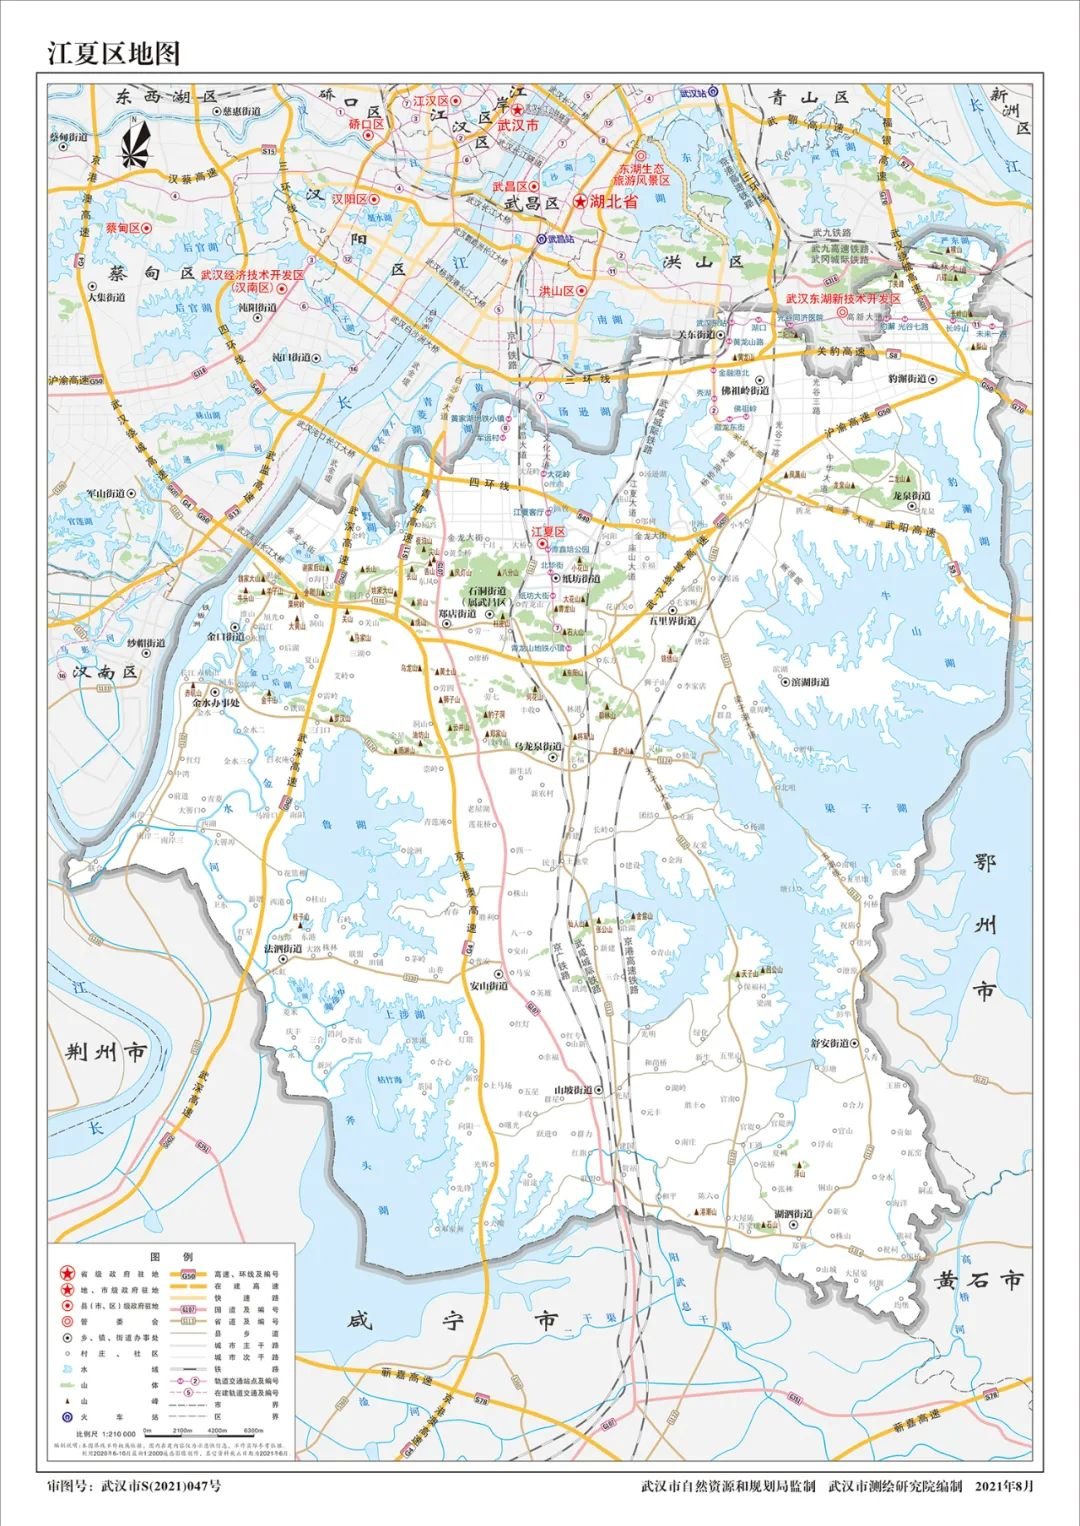 武汉2021新版地图发布区域划分明确